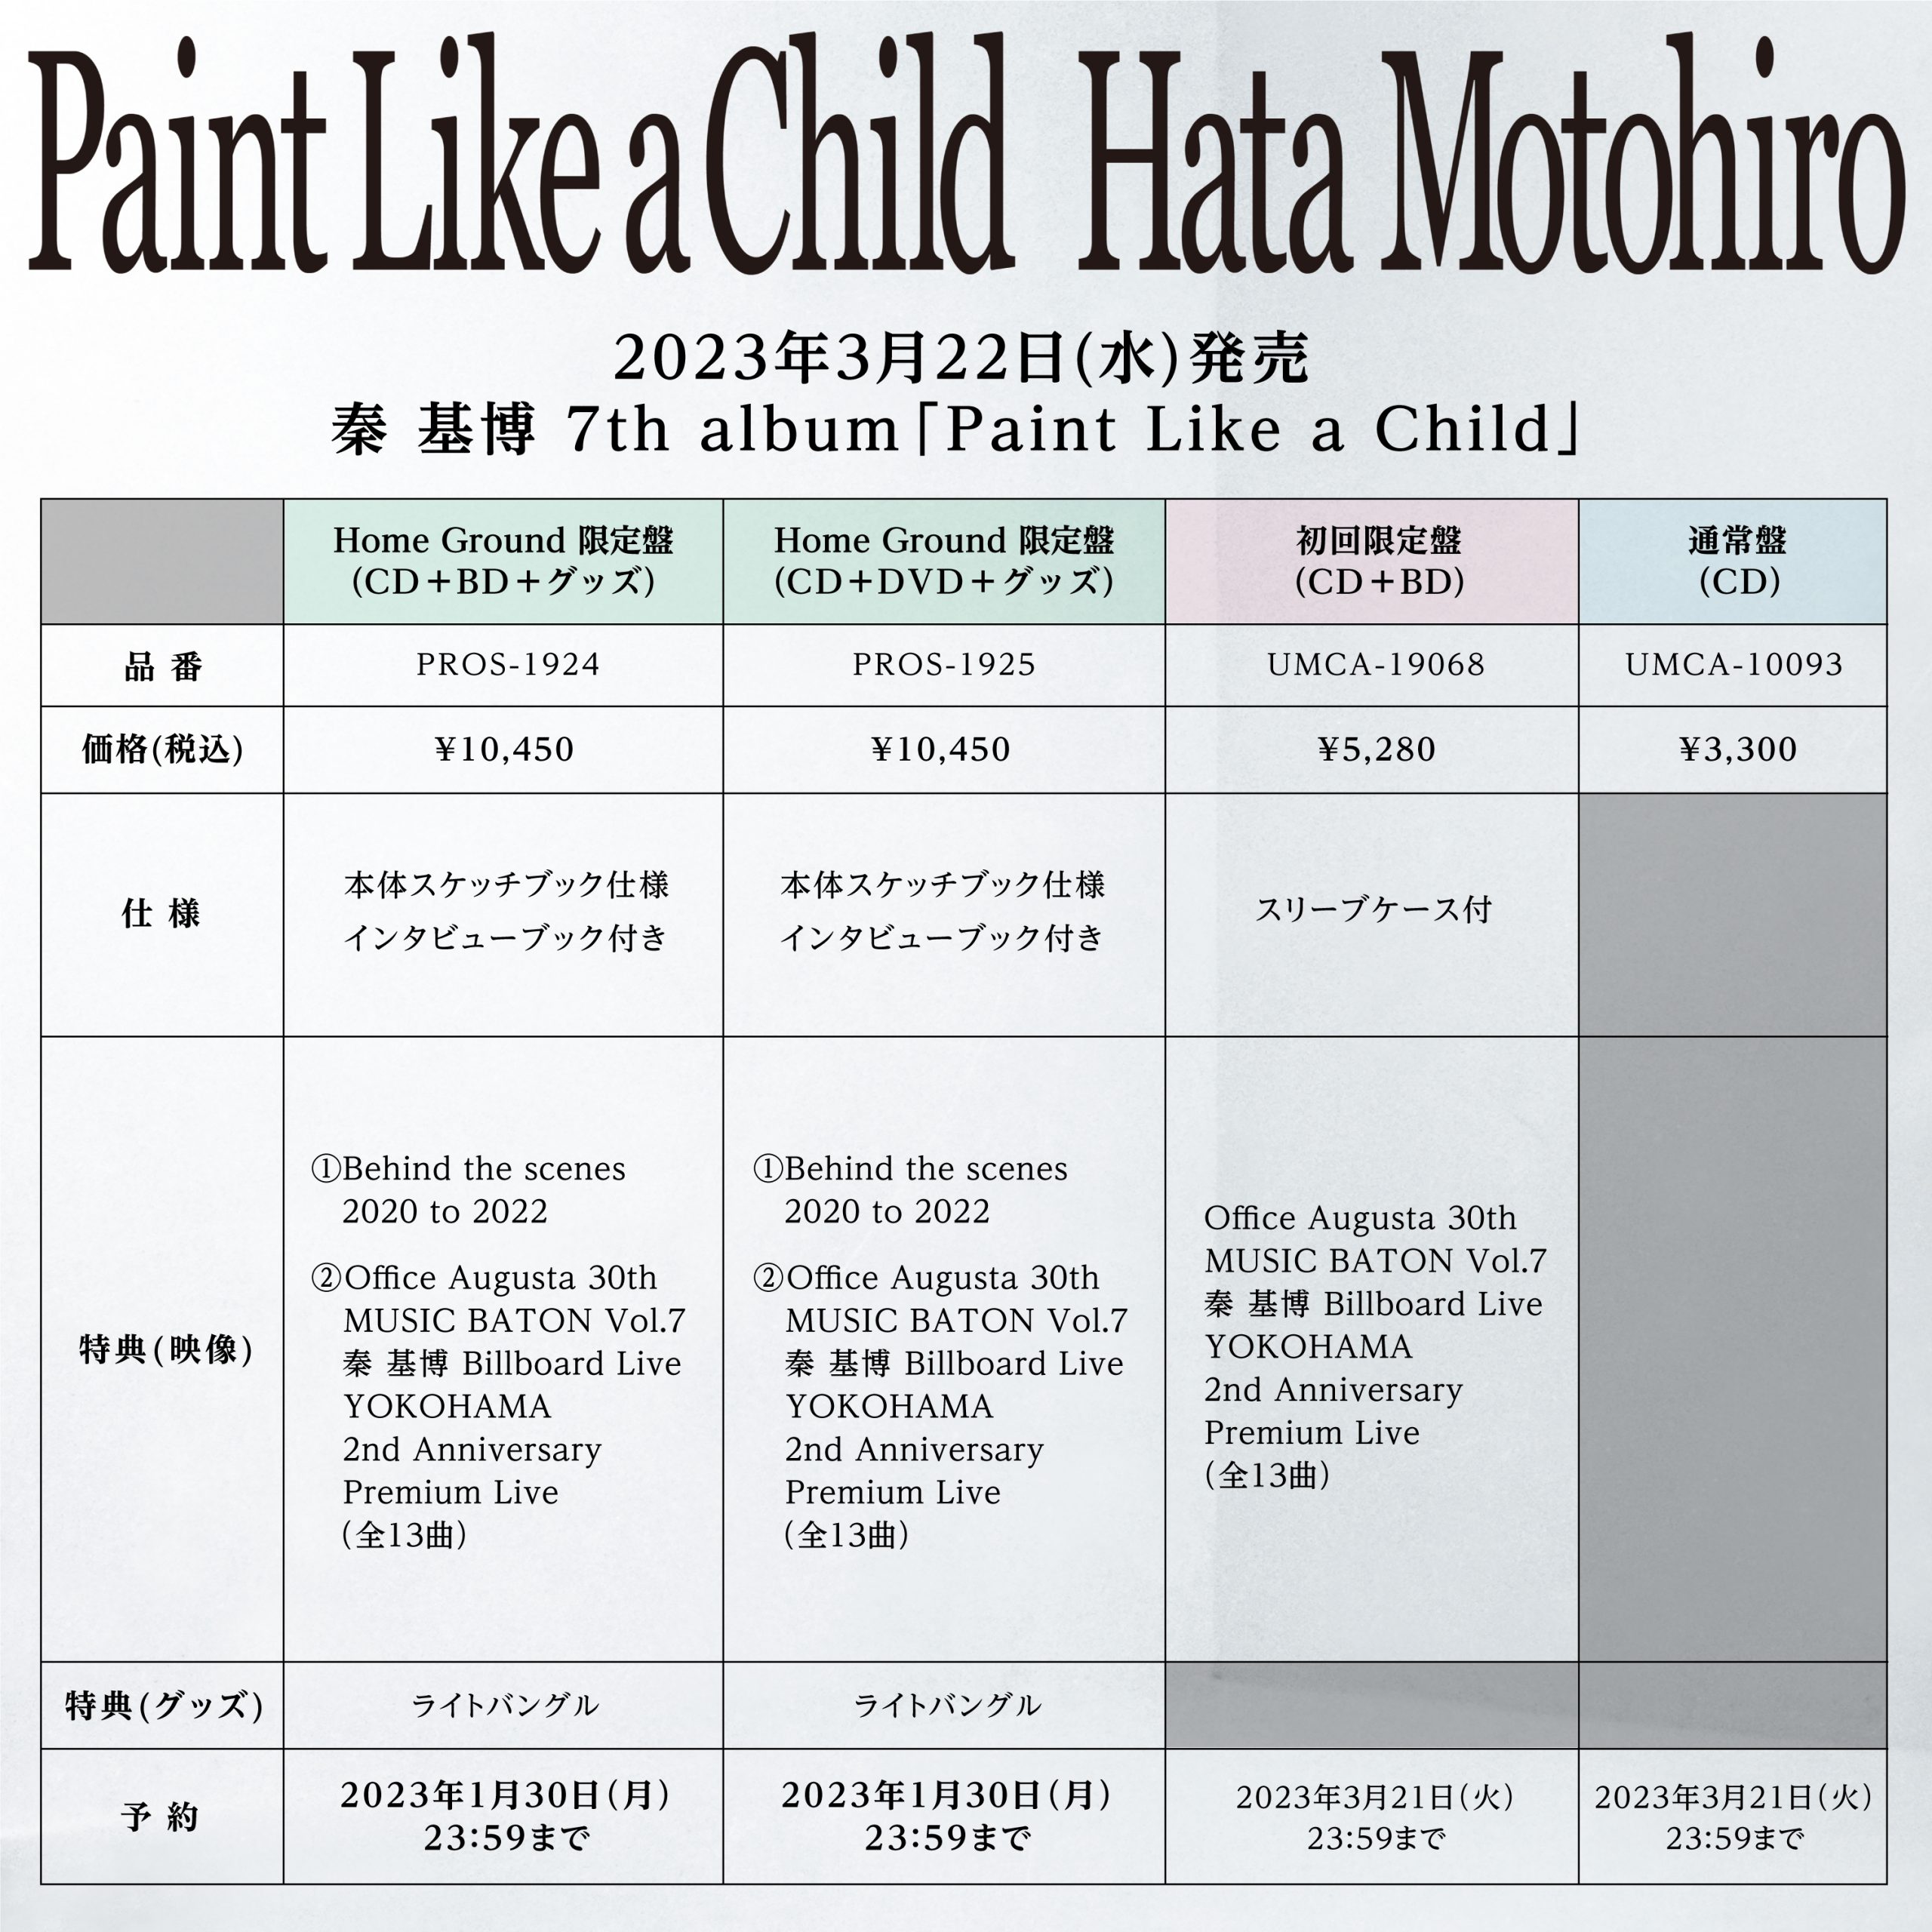 3/22発売 ニューアルバム『Paint Like a Child』収録楽曲を発表 